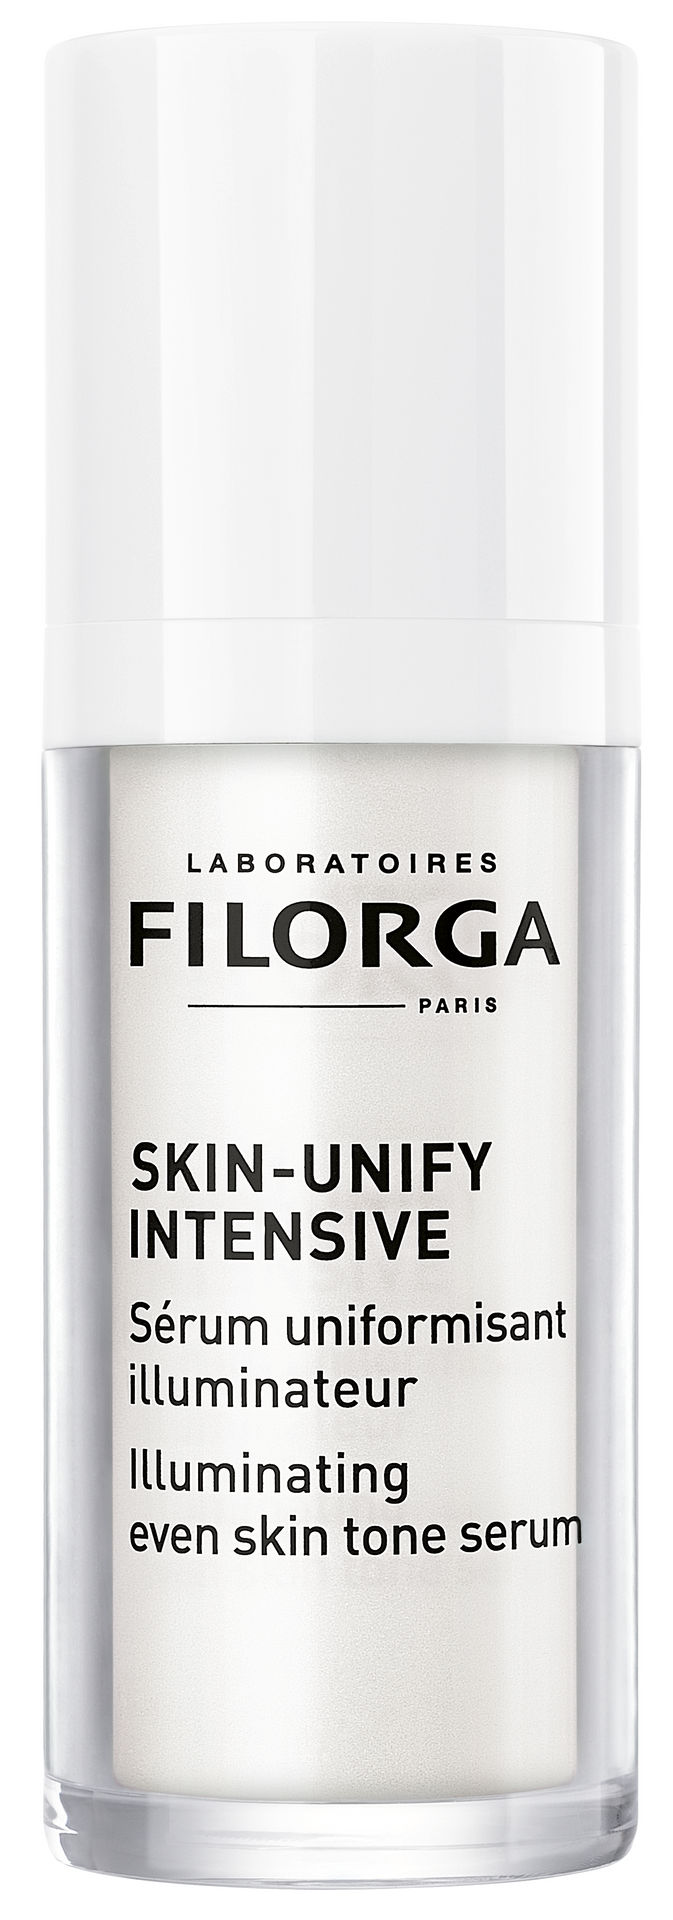 Filorga Filorga Skin-Unify Intensive serum rozświetlające do ujednolicenia kolorytu skóry 30 ml